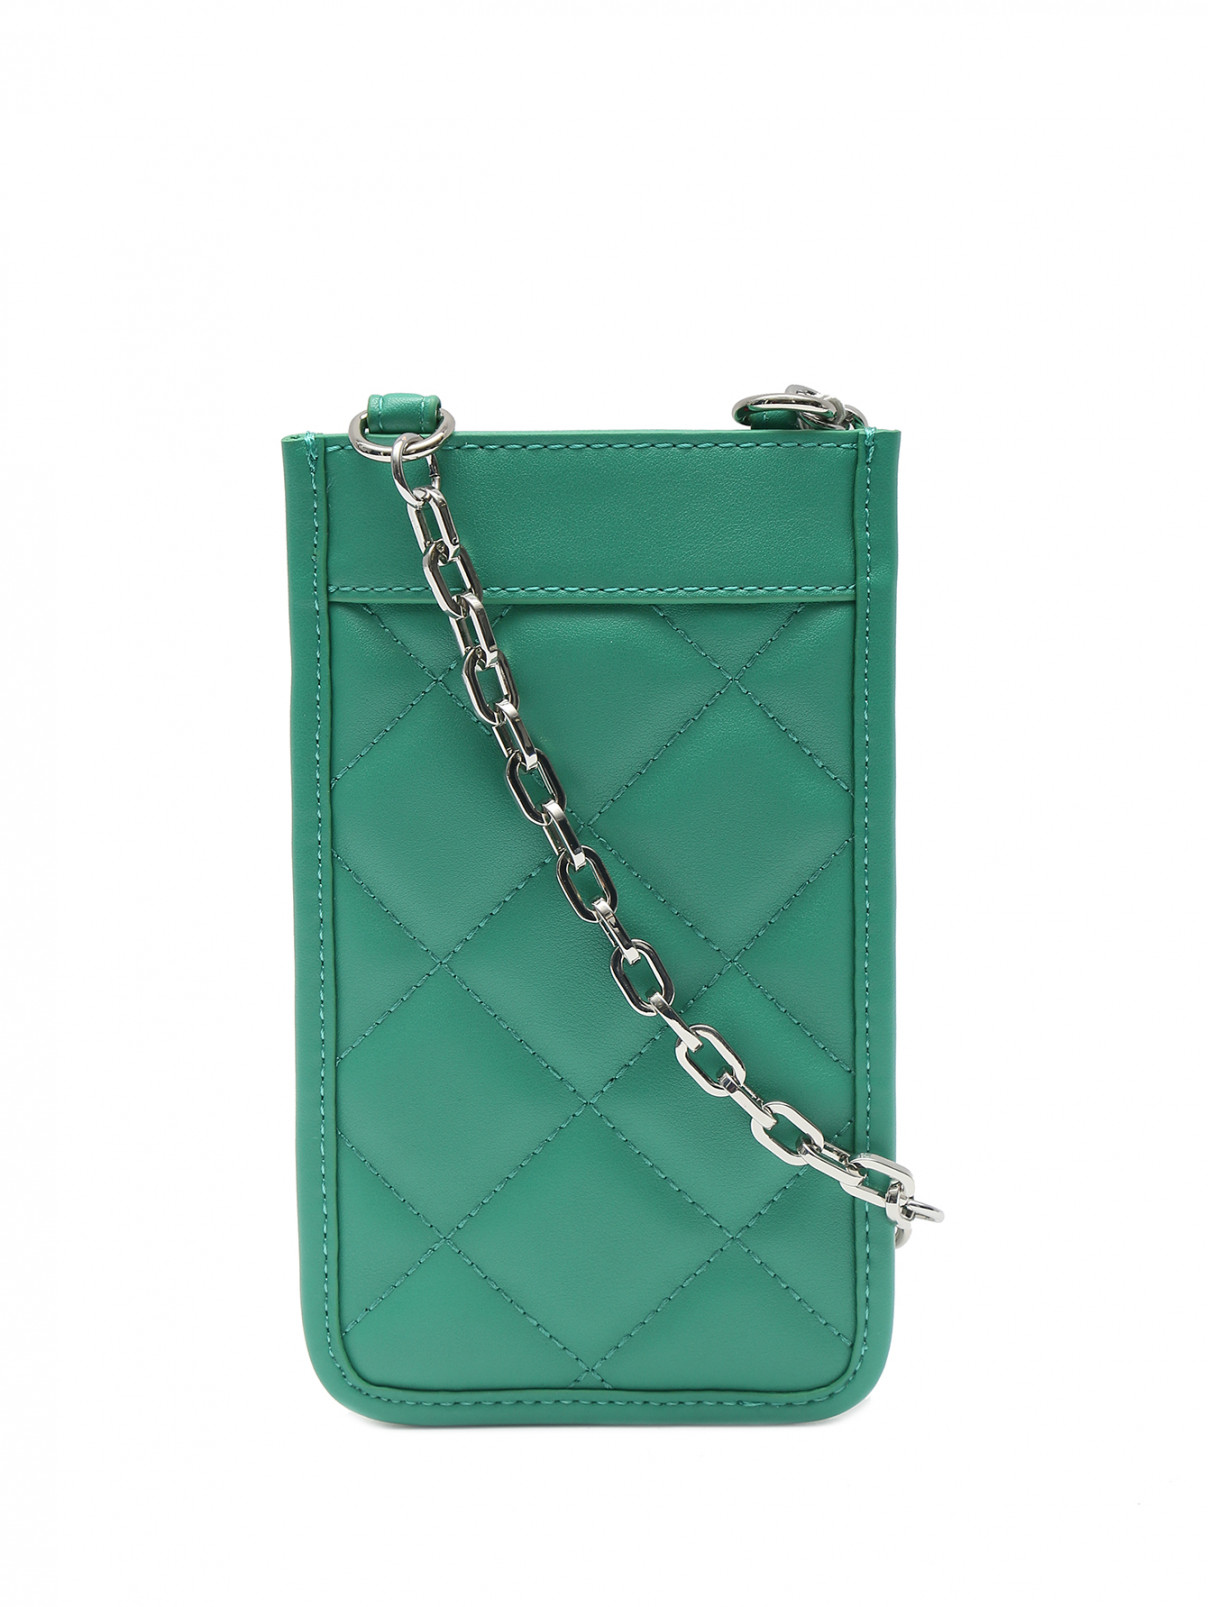 Стеганая сумка из экокожи на цепочке Marina Rinaldi  –  Общий вид  – Цвет:  Зеленый